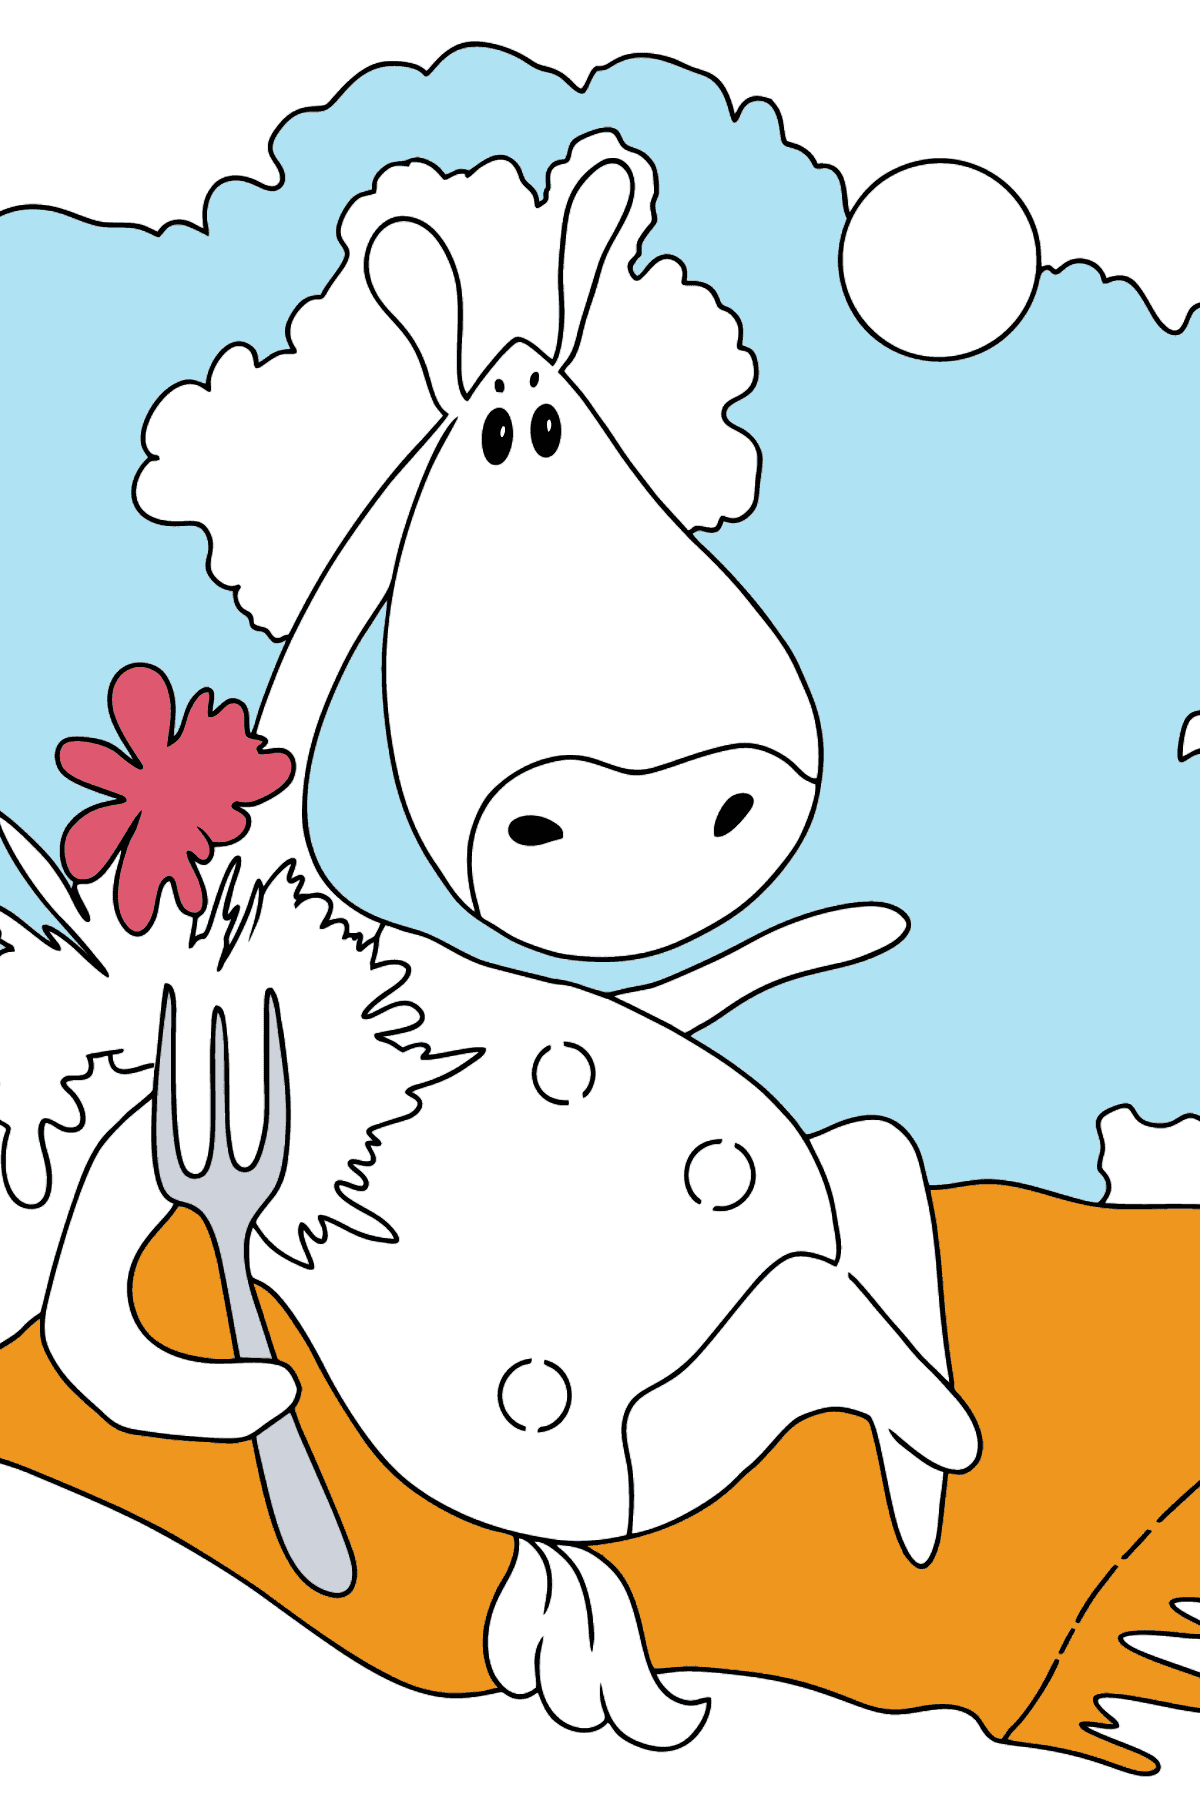 Простая раскраска лошадки - Картинки для Детей